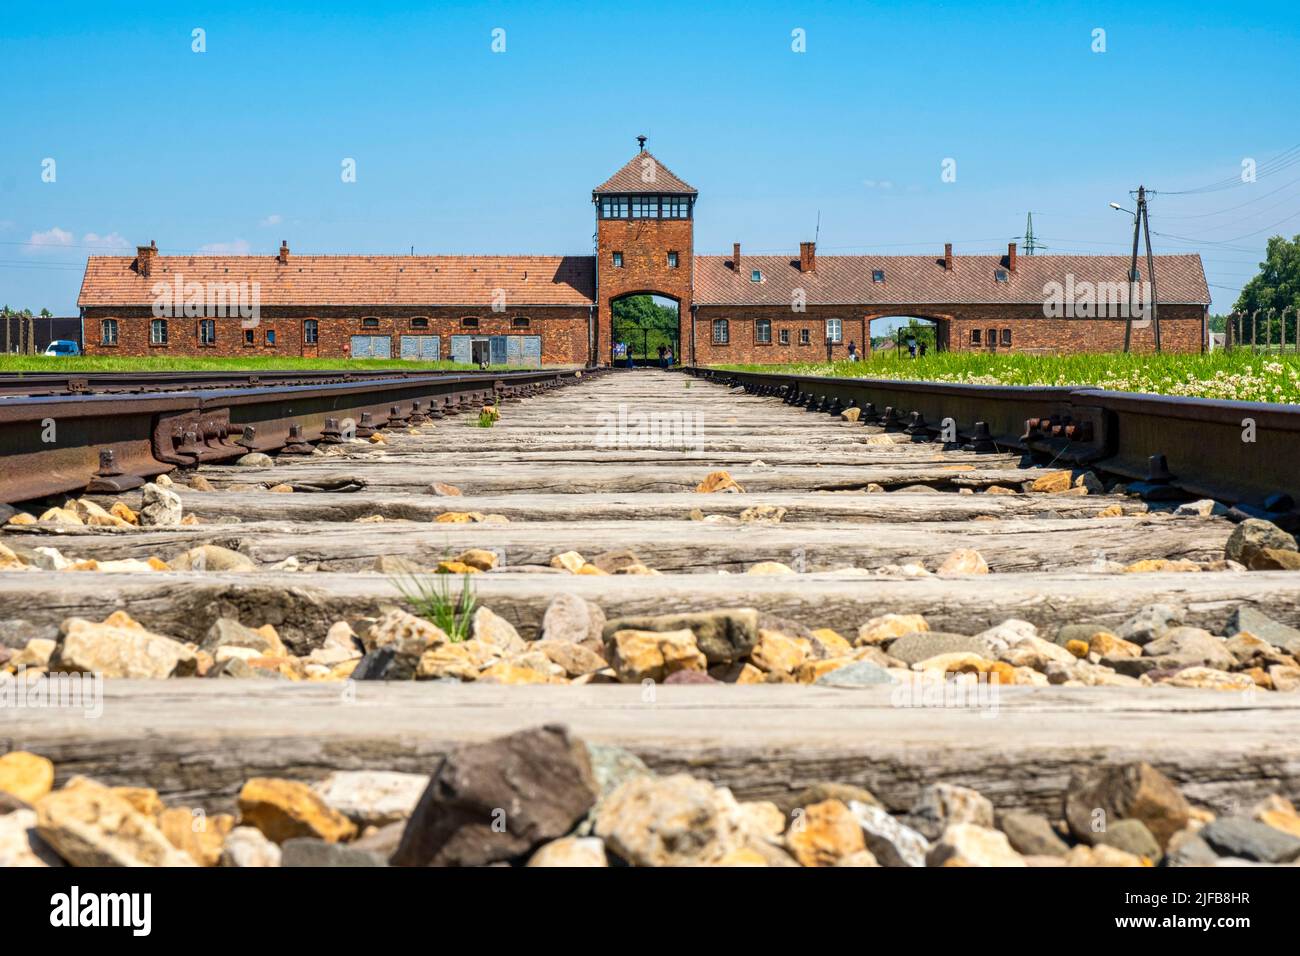 Poland, Silesia region, Oswiecim, listed as World Heritage by UNESCO, Birkenau extermination camp (Auschwitz II), railway ramp Stock Photo